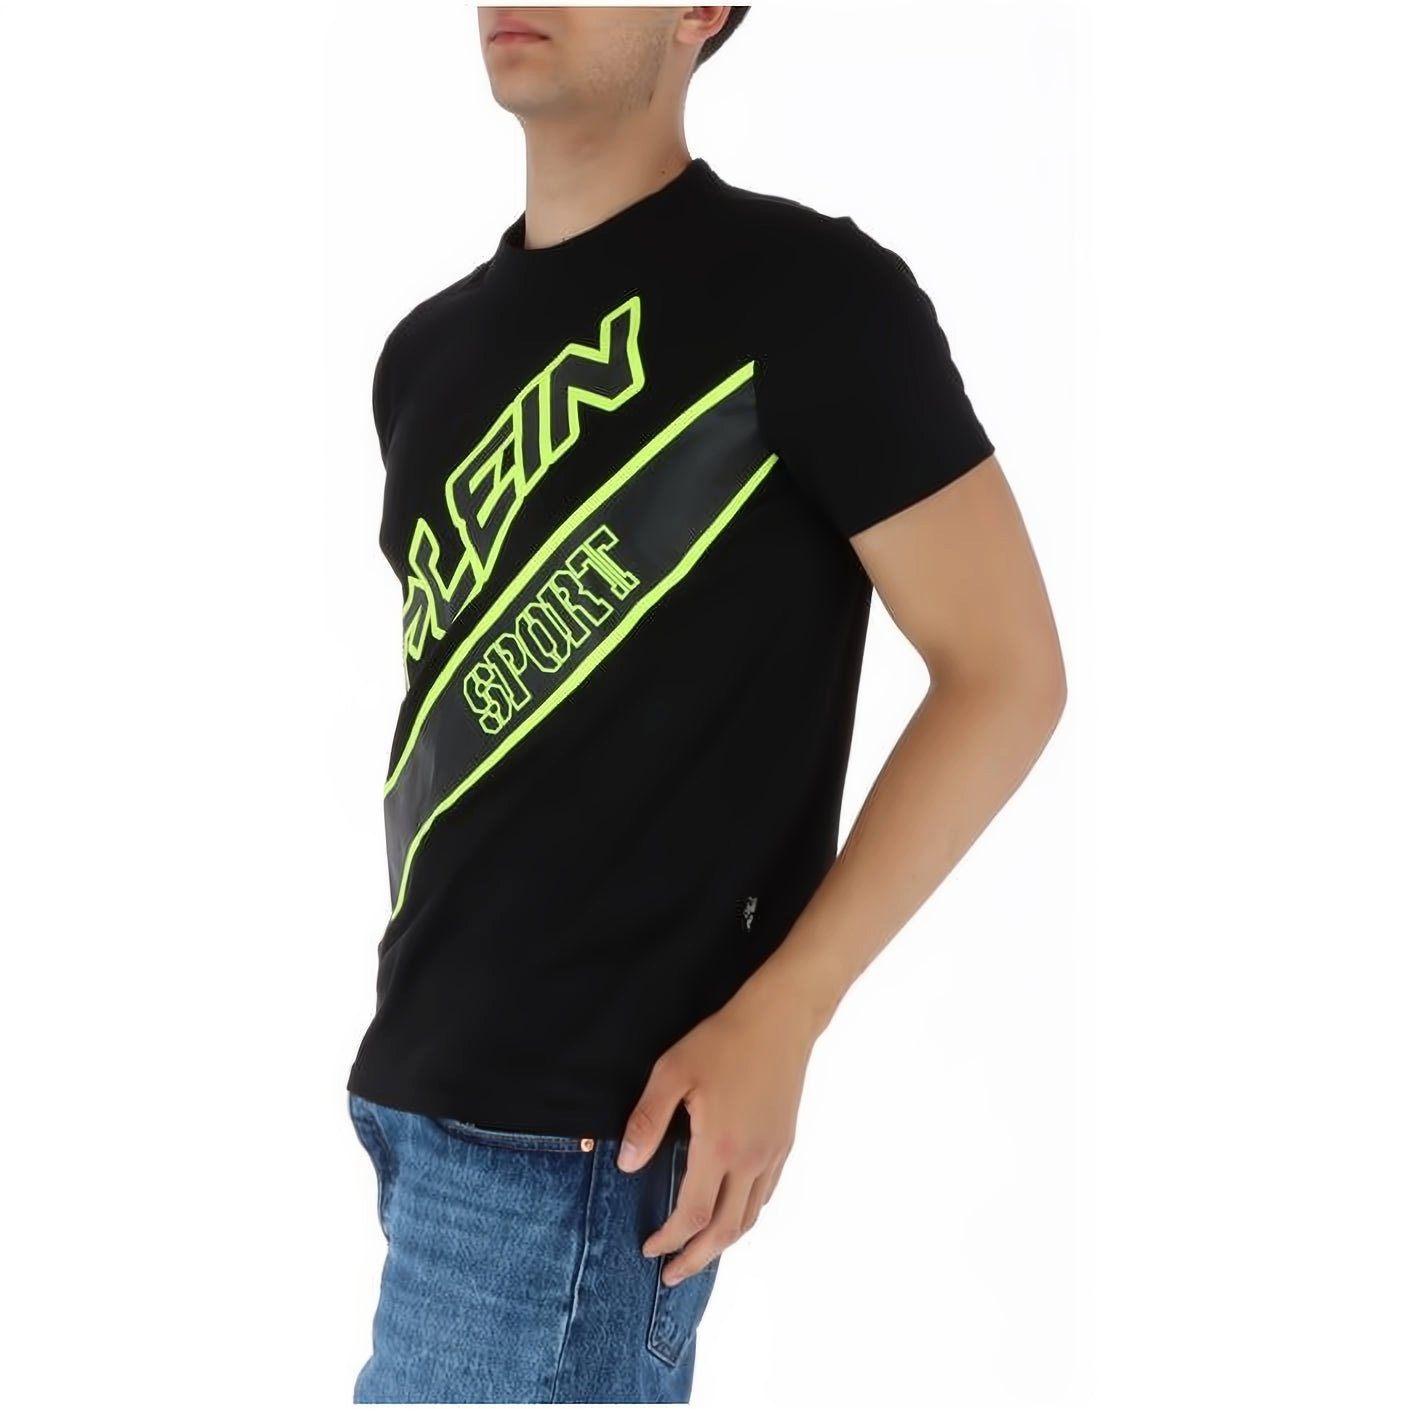 NECK Stylischer T-Shirt Farbauswahl Tragekomfort, Look, hoher vielfältige ROUND SPORT PLEIN